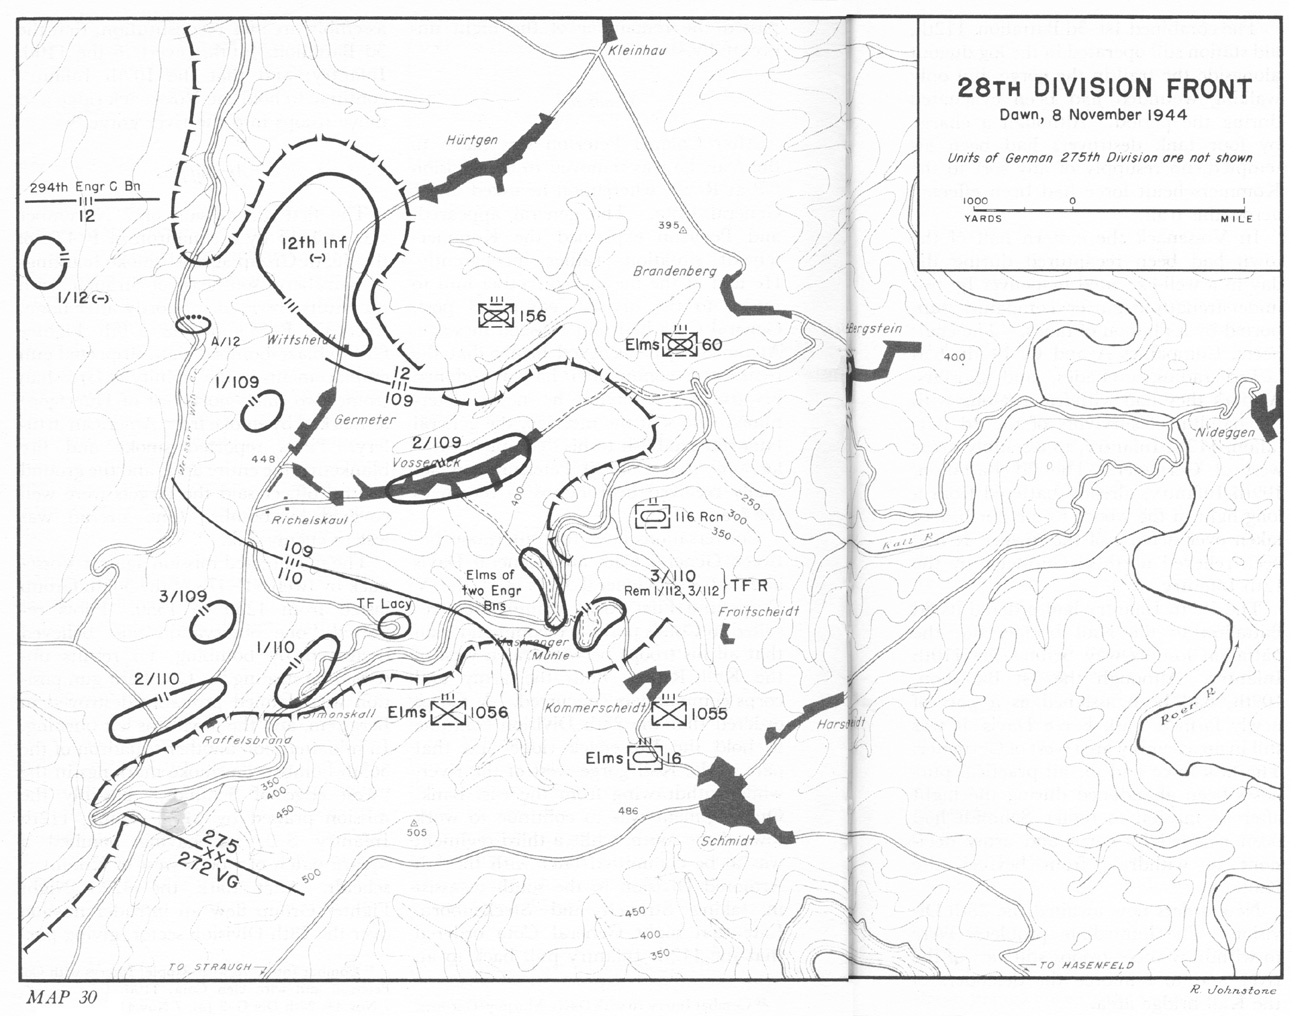 28th Division Front Dawn 8 November 1944